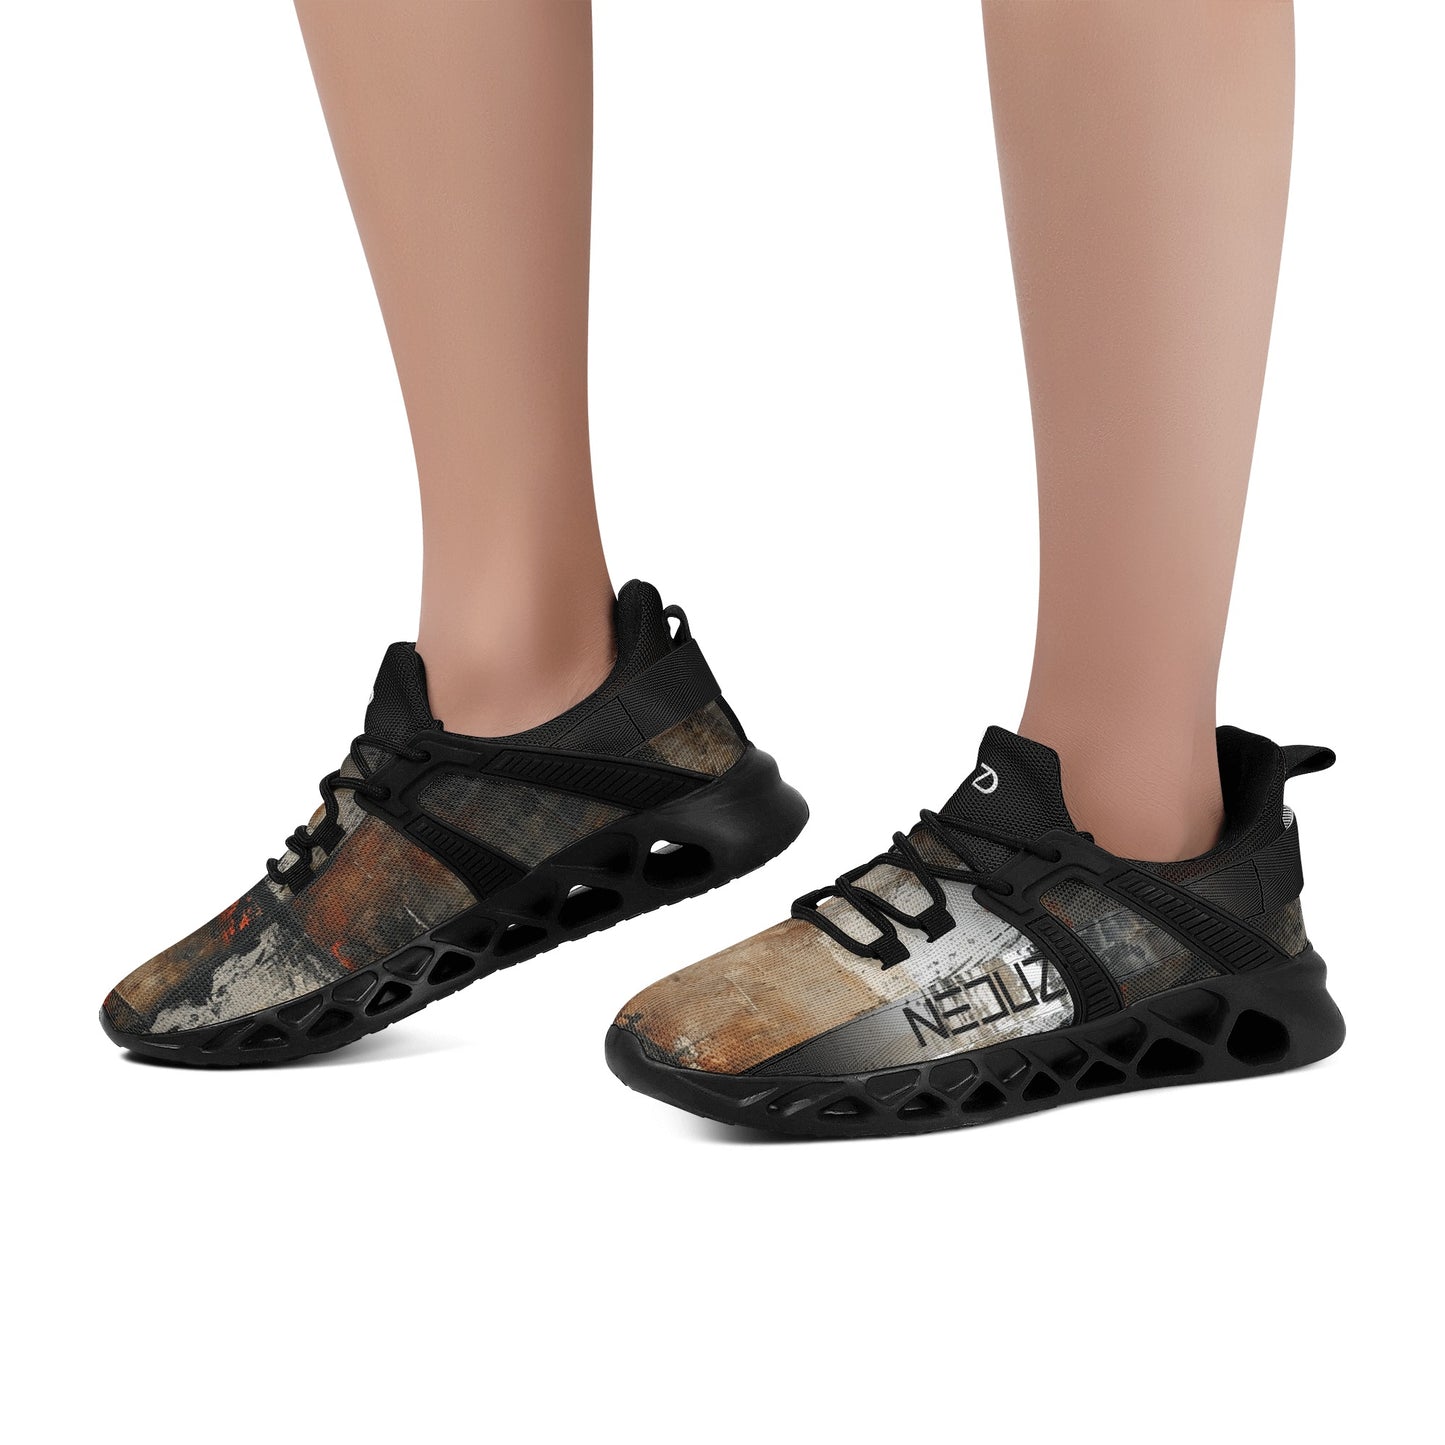 Neduz Artified Elastic Sport Sneakers – Abstract Grunge Art